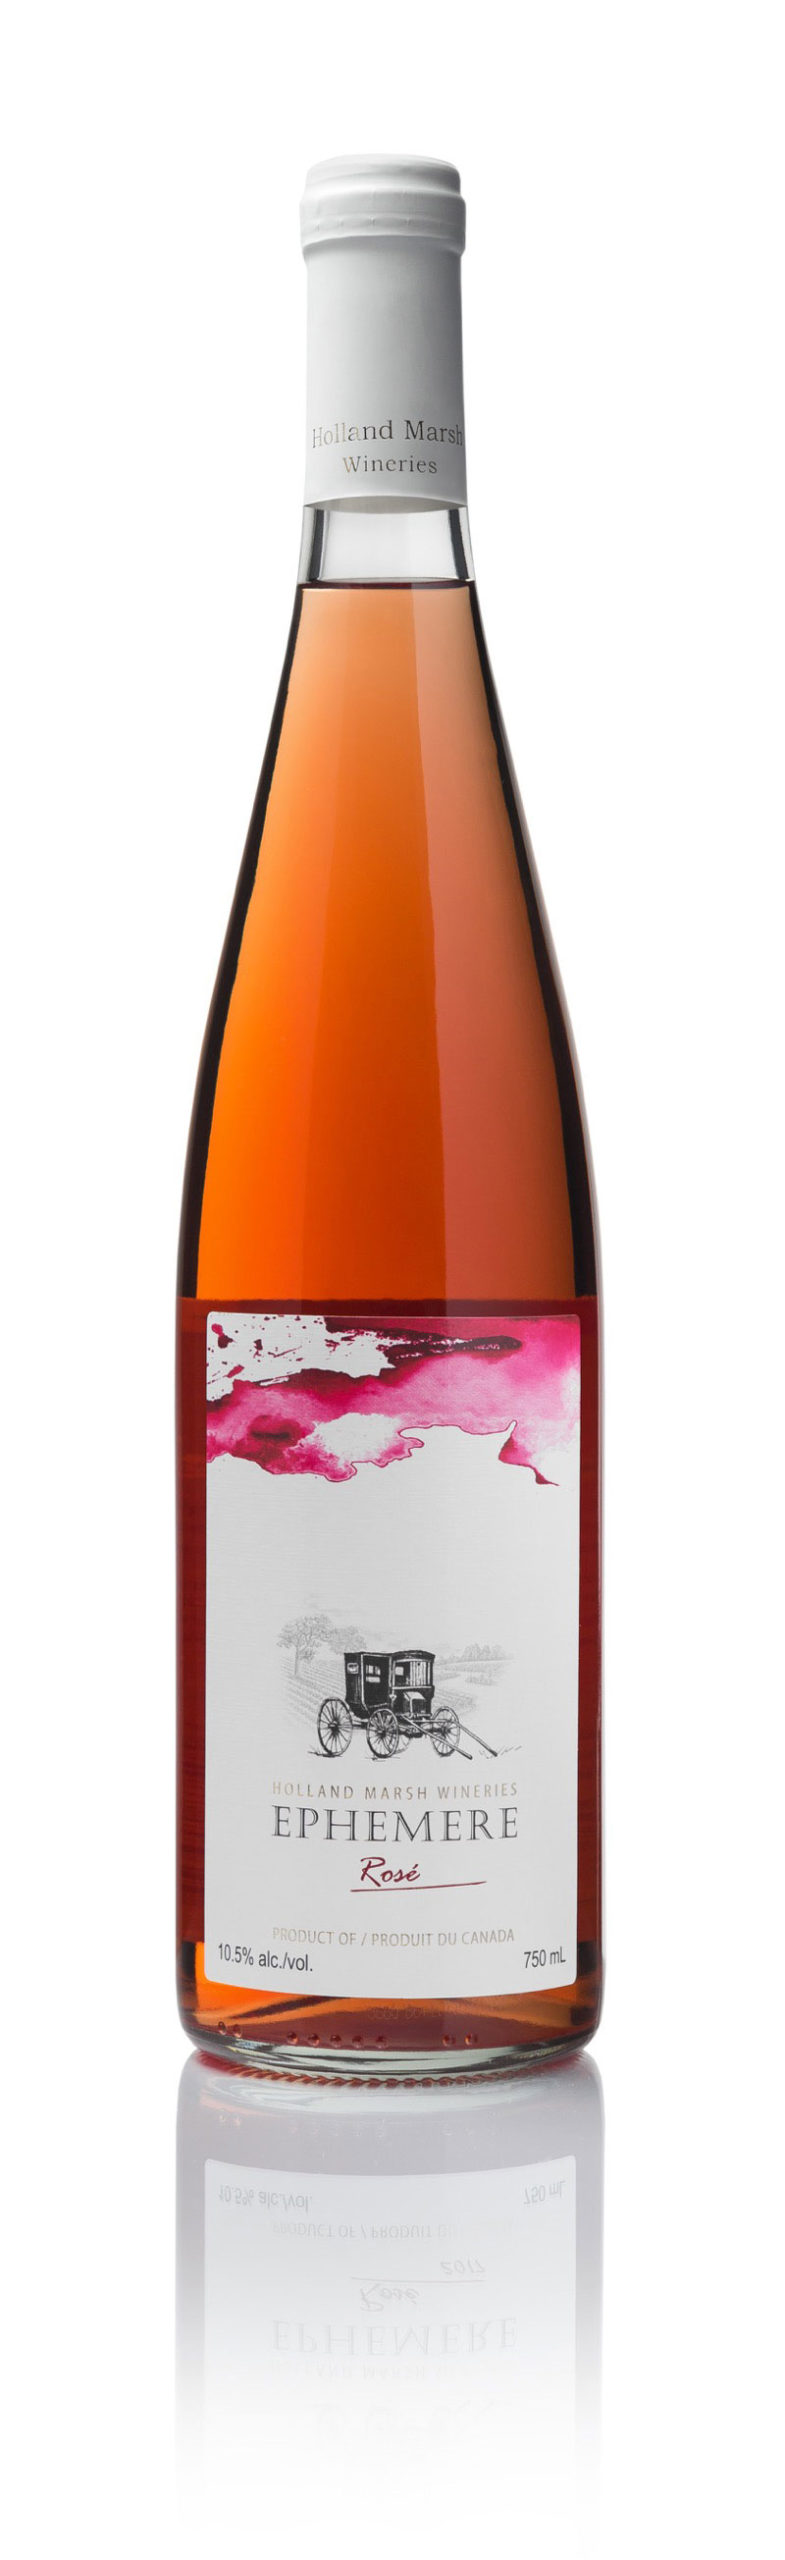 Holland Marsh Winery - Ephemere Rose